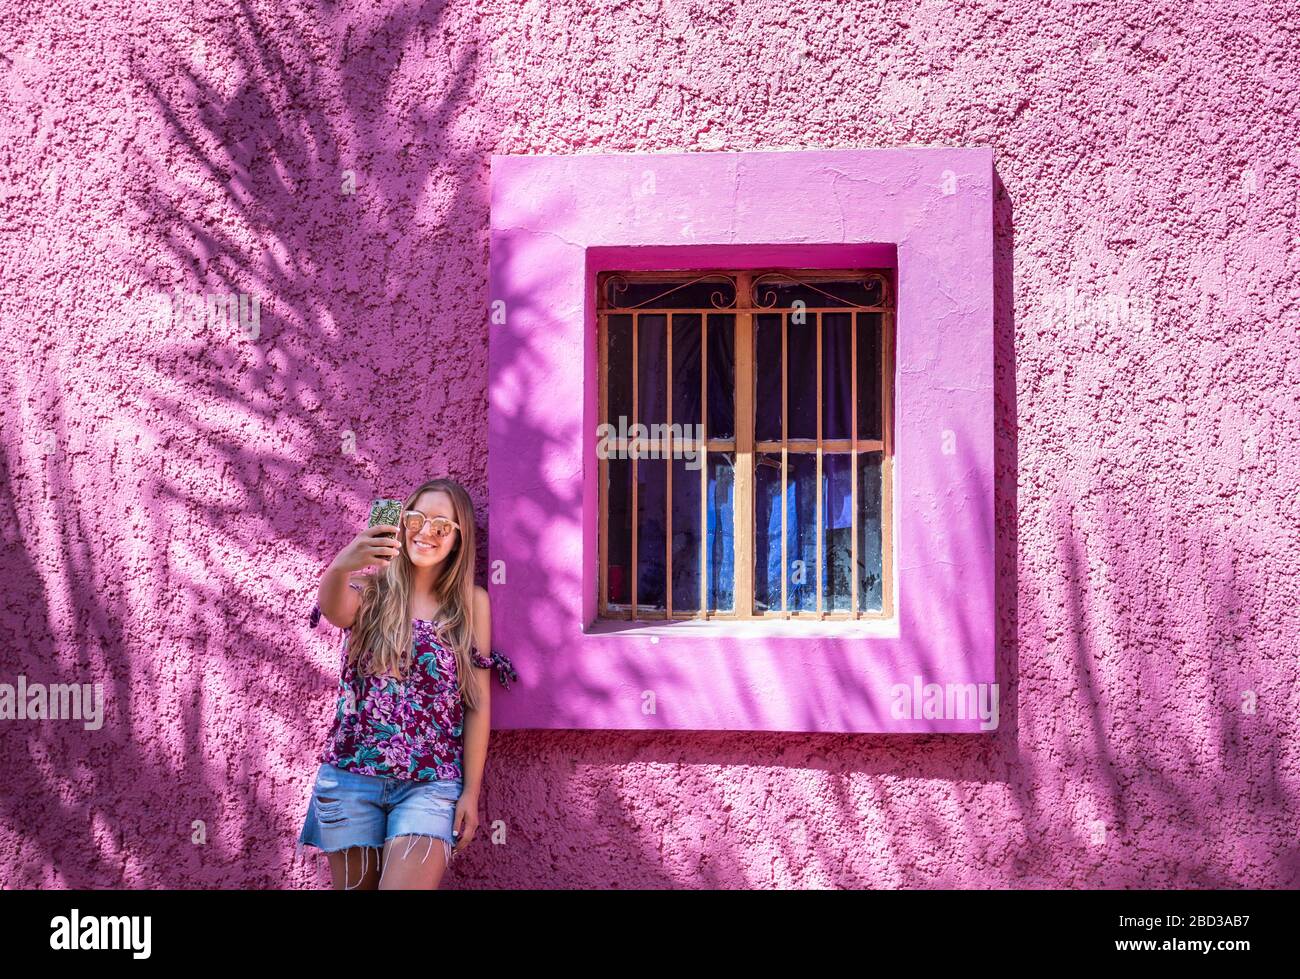 Selfie time in colorful Mazatlan Viejo, Mexico. Stock Photo